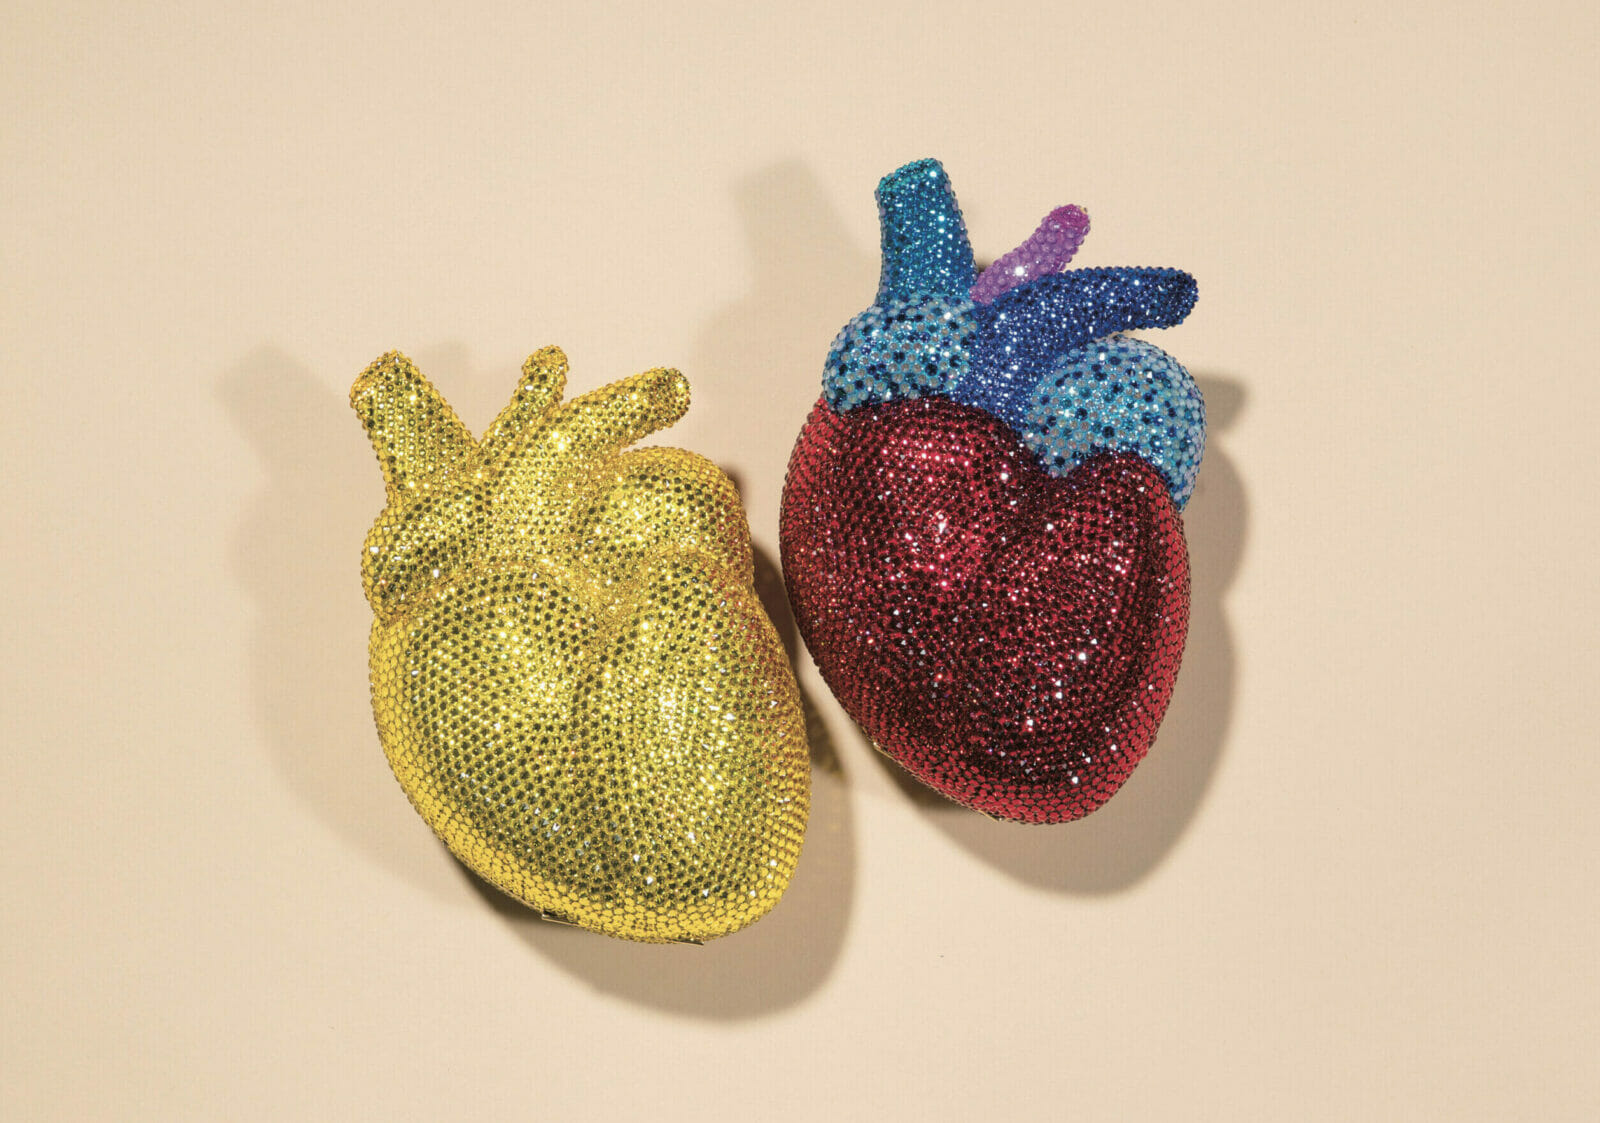 〈グッチ〉の心臓モチーフのミニバッグ